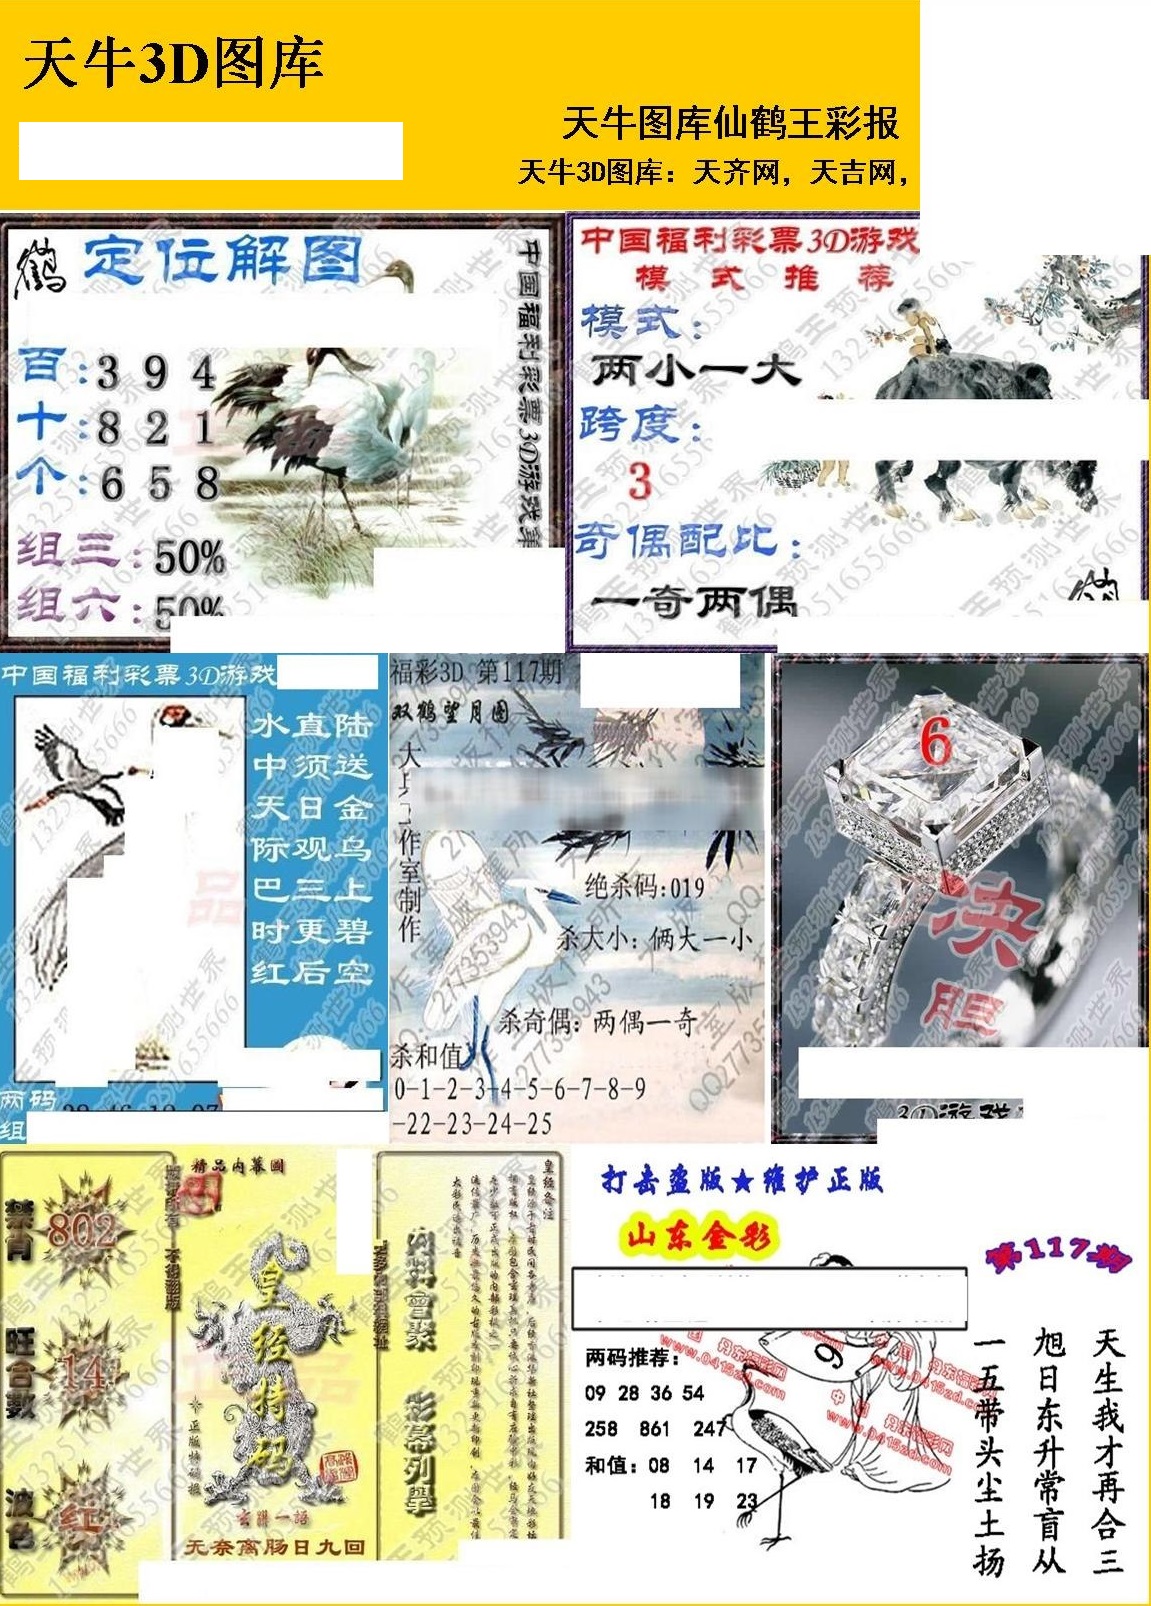 20117期福彩3d 天牛彩报图版系列